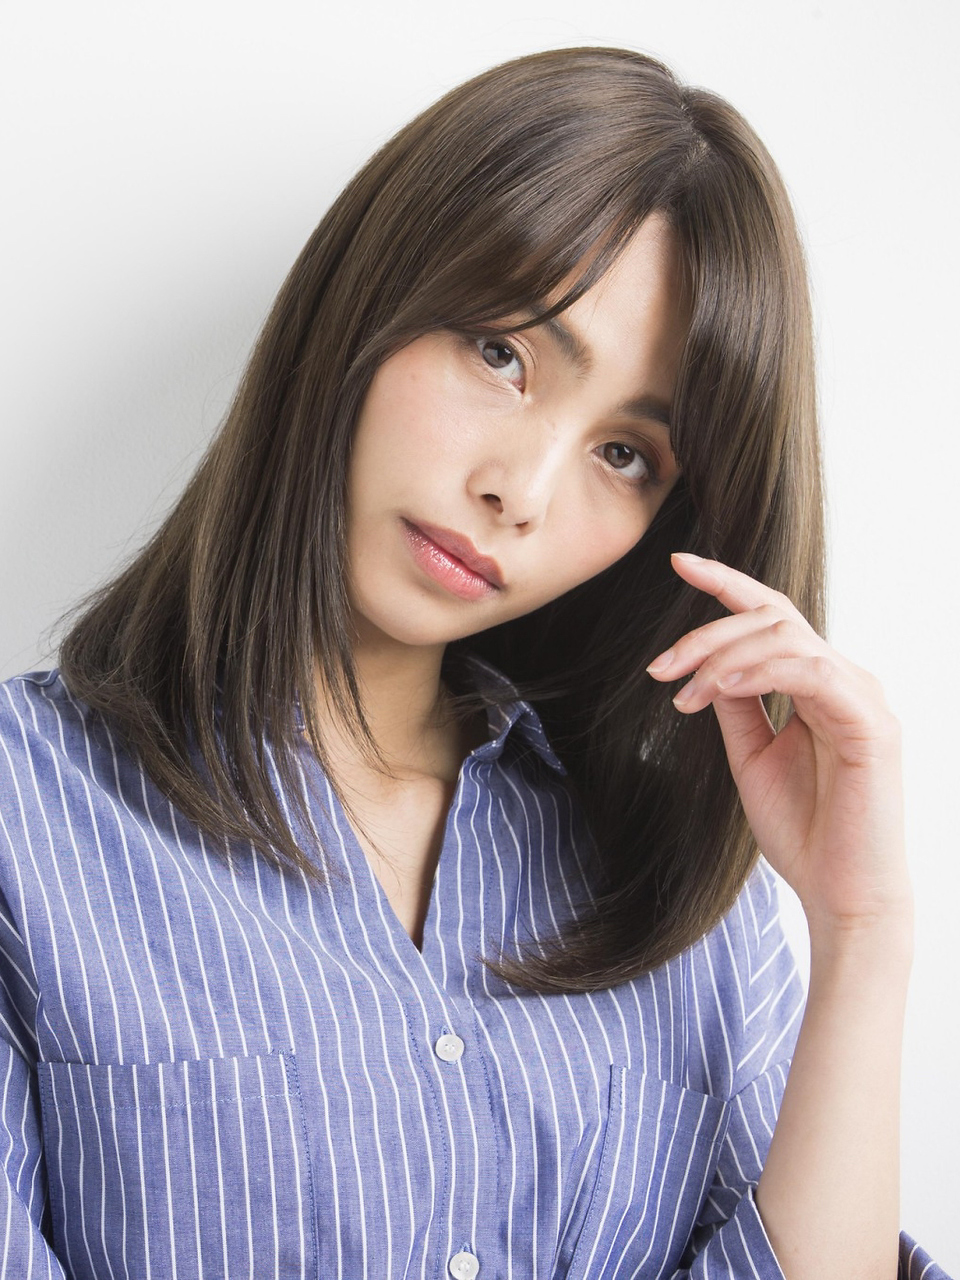 若く見える髪型とは マイナス５歳を叶える方法をプロの美容師が解説します 似合わせカットが上手い東京の美容師 美容室minx銀座 蛭田のブログ